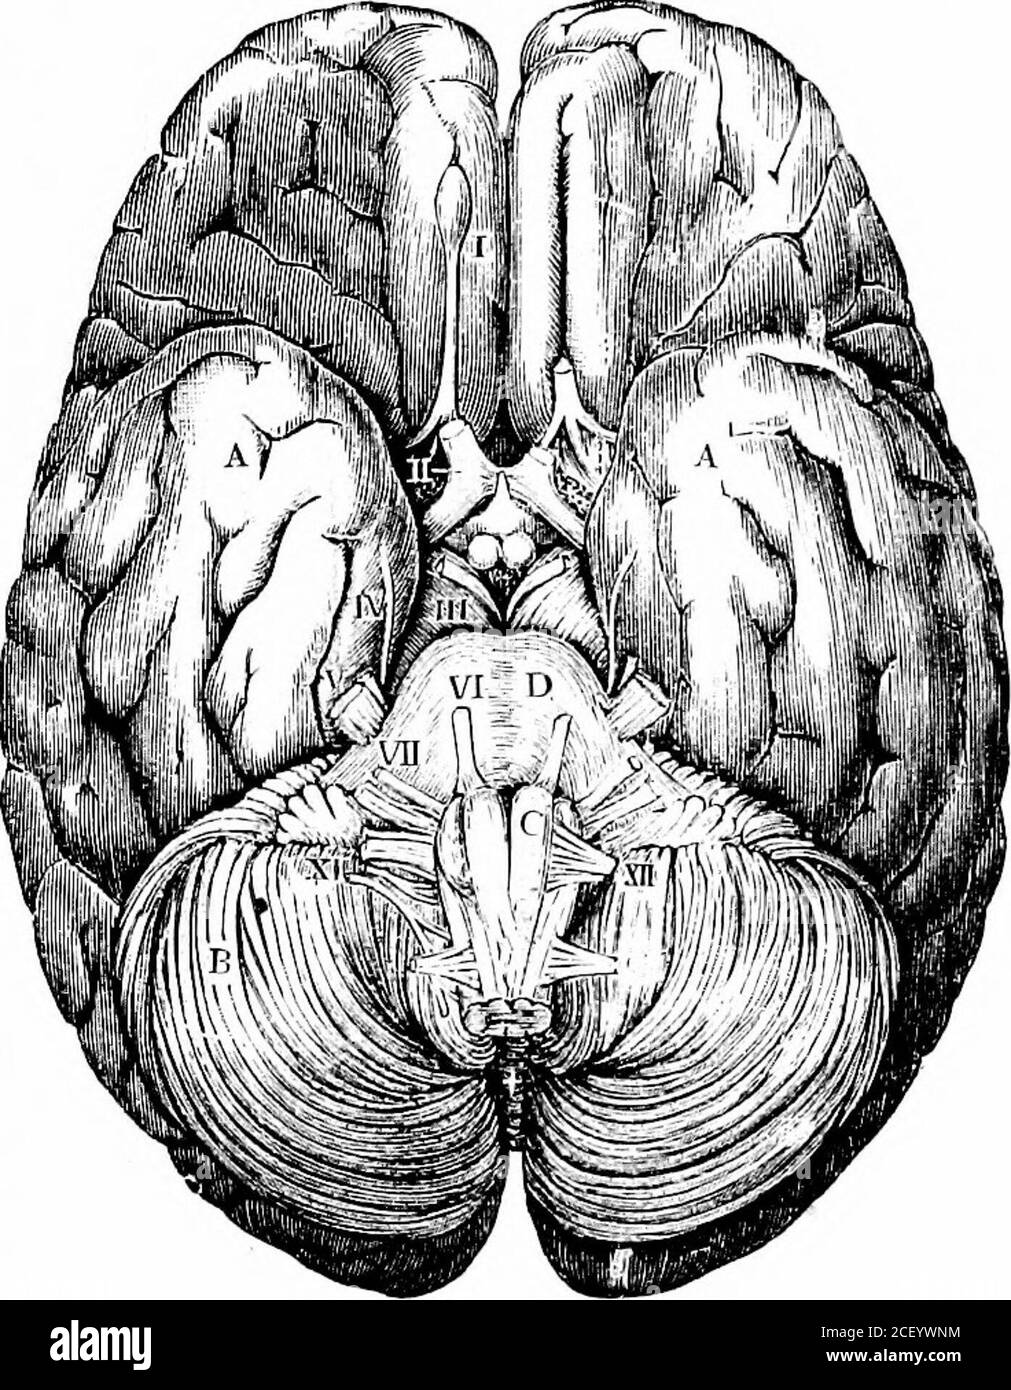 Menschliche Physiologie. DAS GEHIRN 183 die Hemisphären des Gehirns. Seine graue  Substanz besetzt das Innere. Wir haben bemerkt, dass die Funktionen des  Großhirns und des Kleinhirns nicht von lebenswichtiger Bedeutung sind,